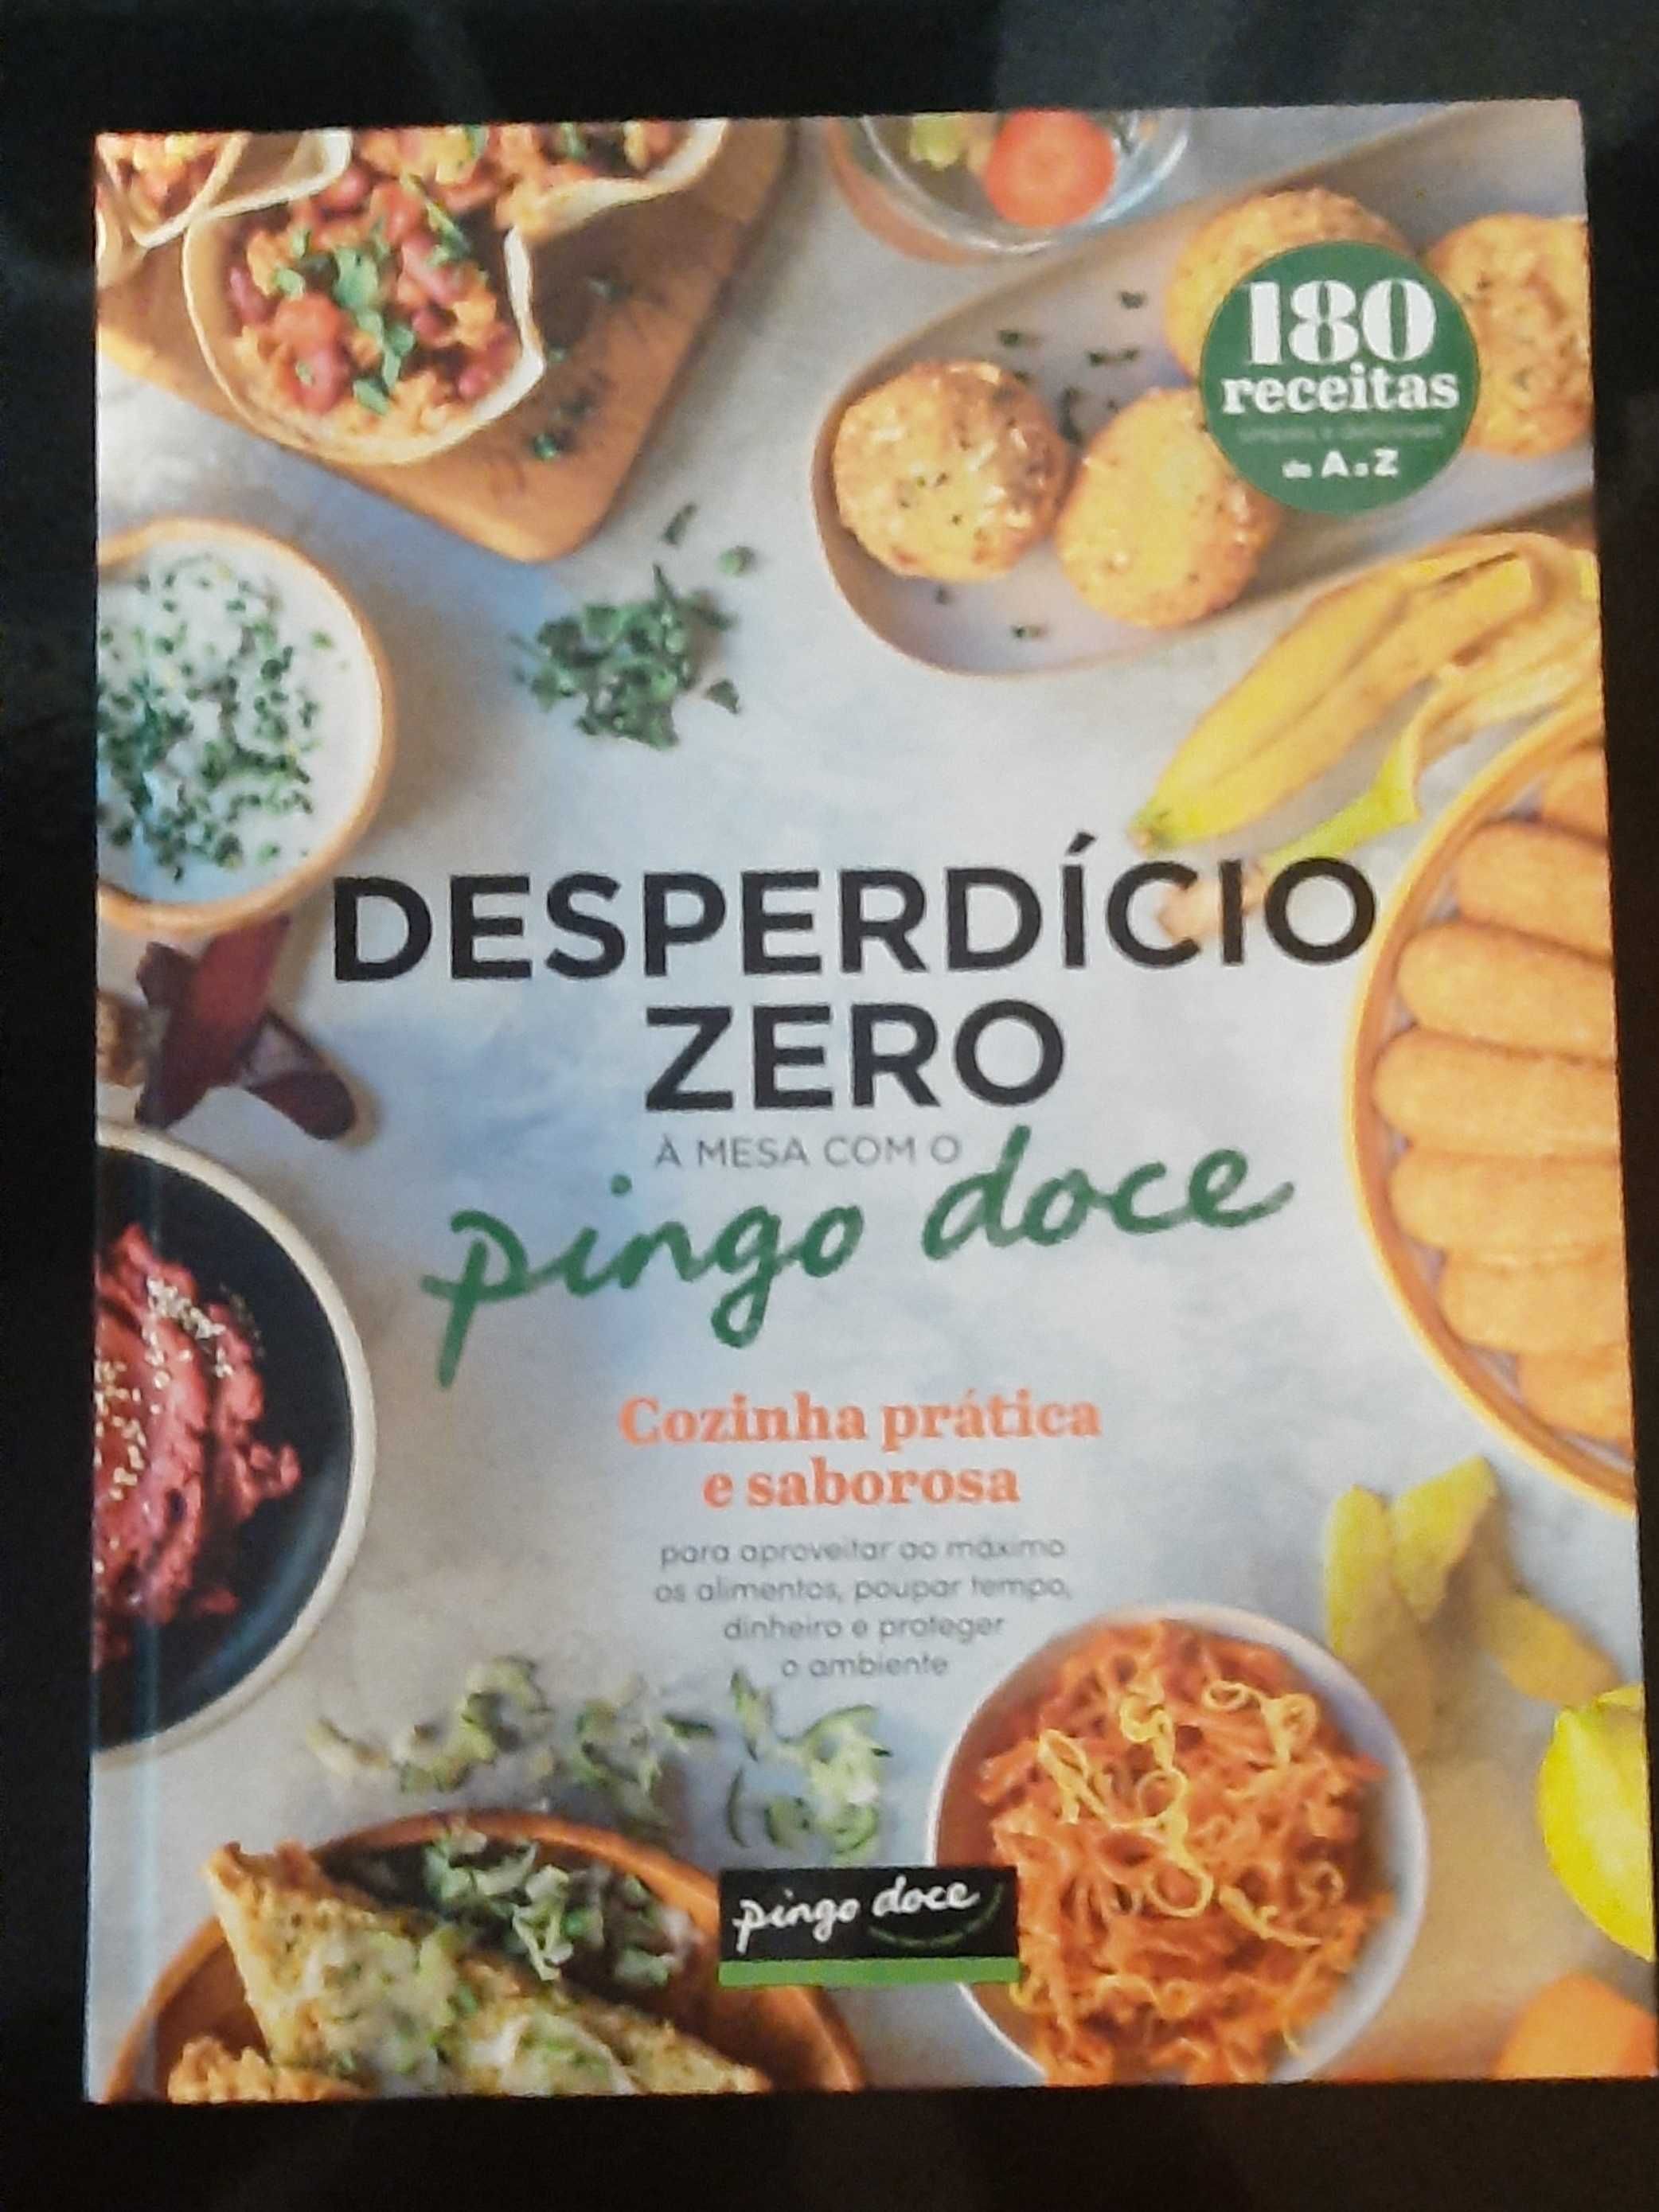 Livro de receitas "Desperdício Zero" Pingo Doce